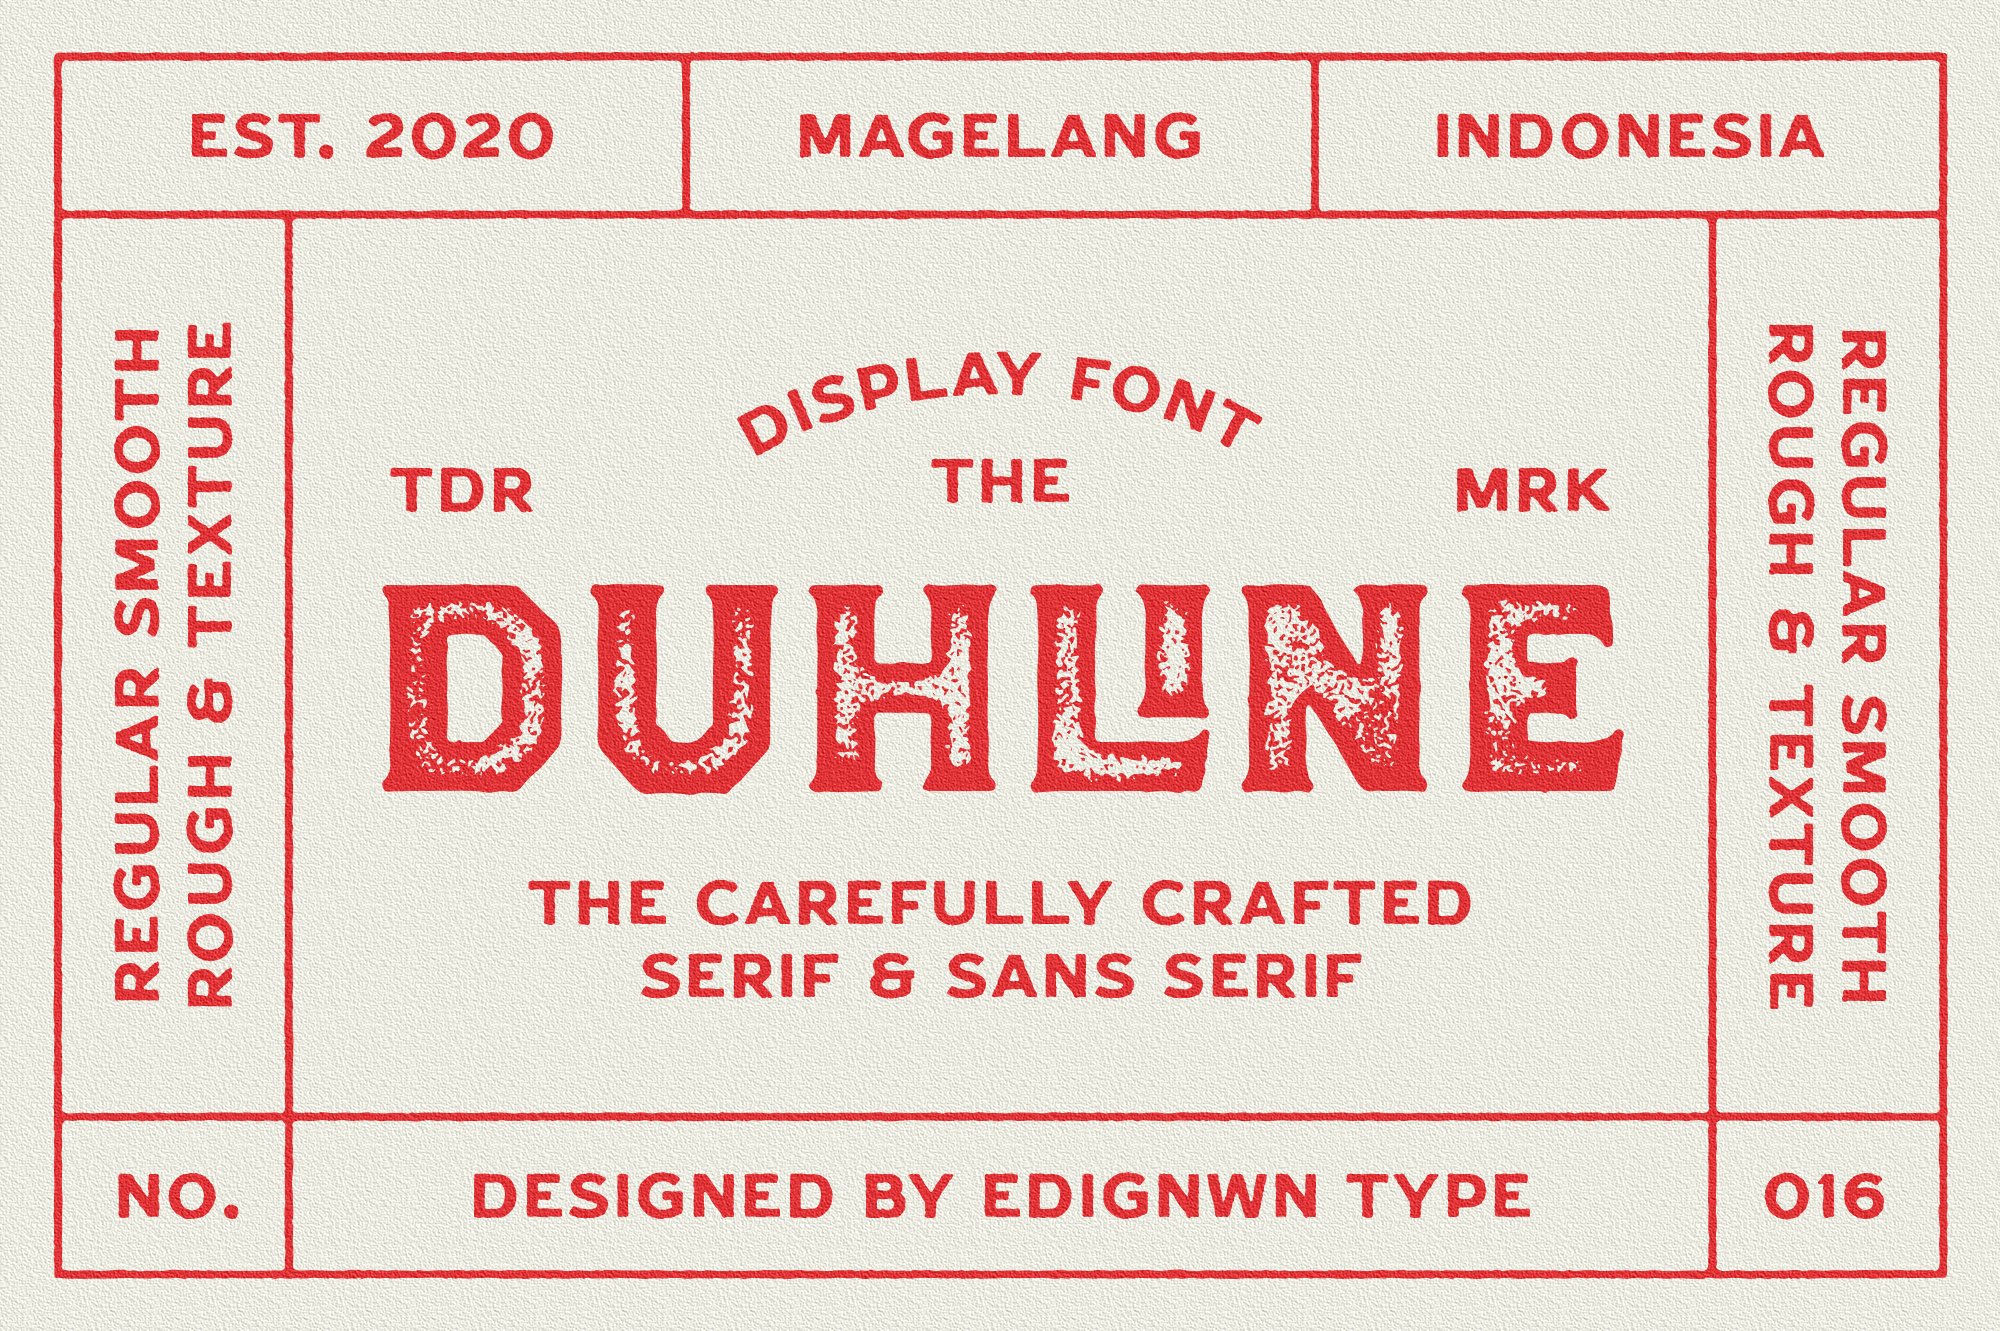 Duhline - Display Font cover image.